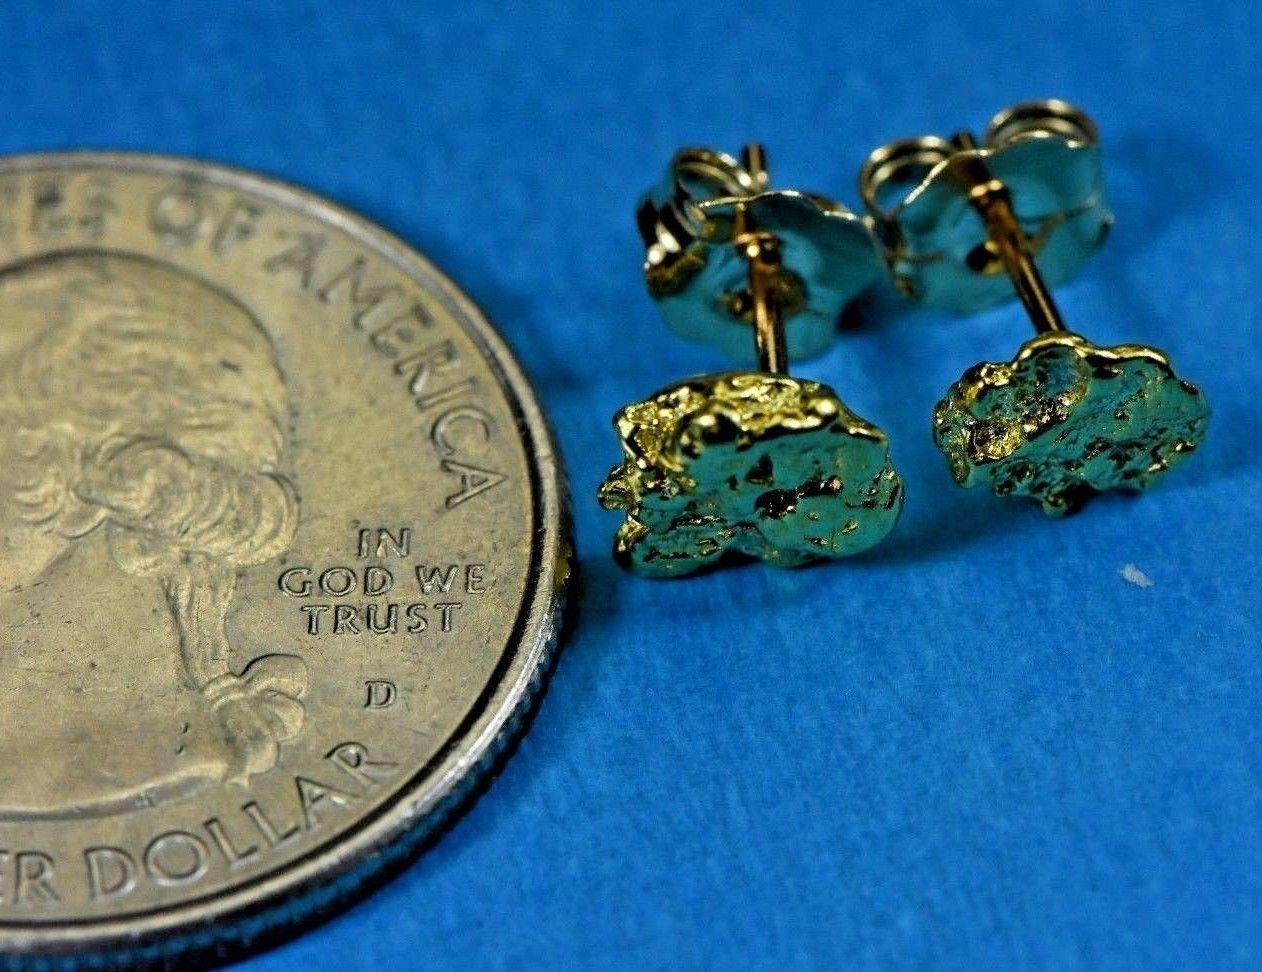 Alaskan-Yukon Bc Natural Gold Nugget Stud Earrings 1.40 To 1.50 Grams Alaskan